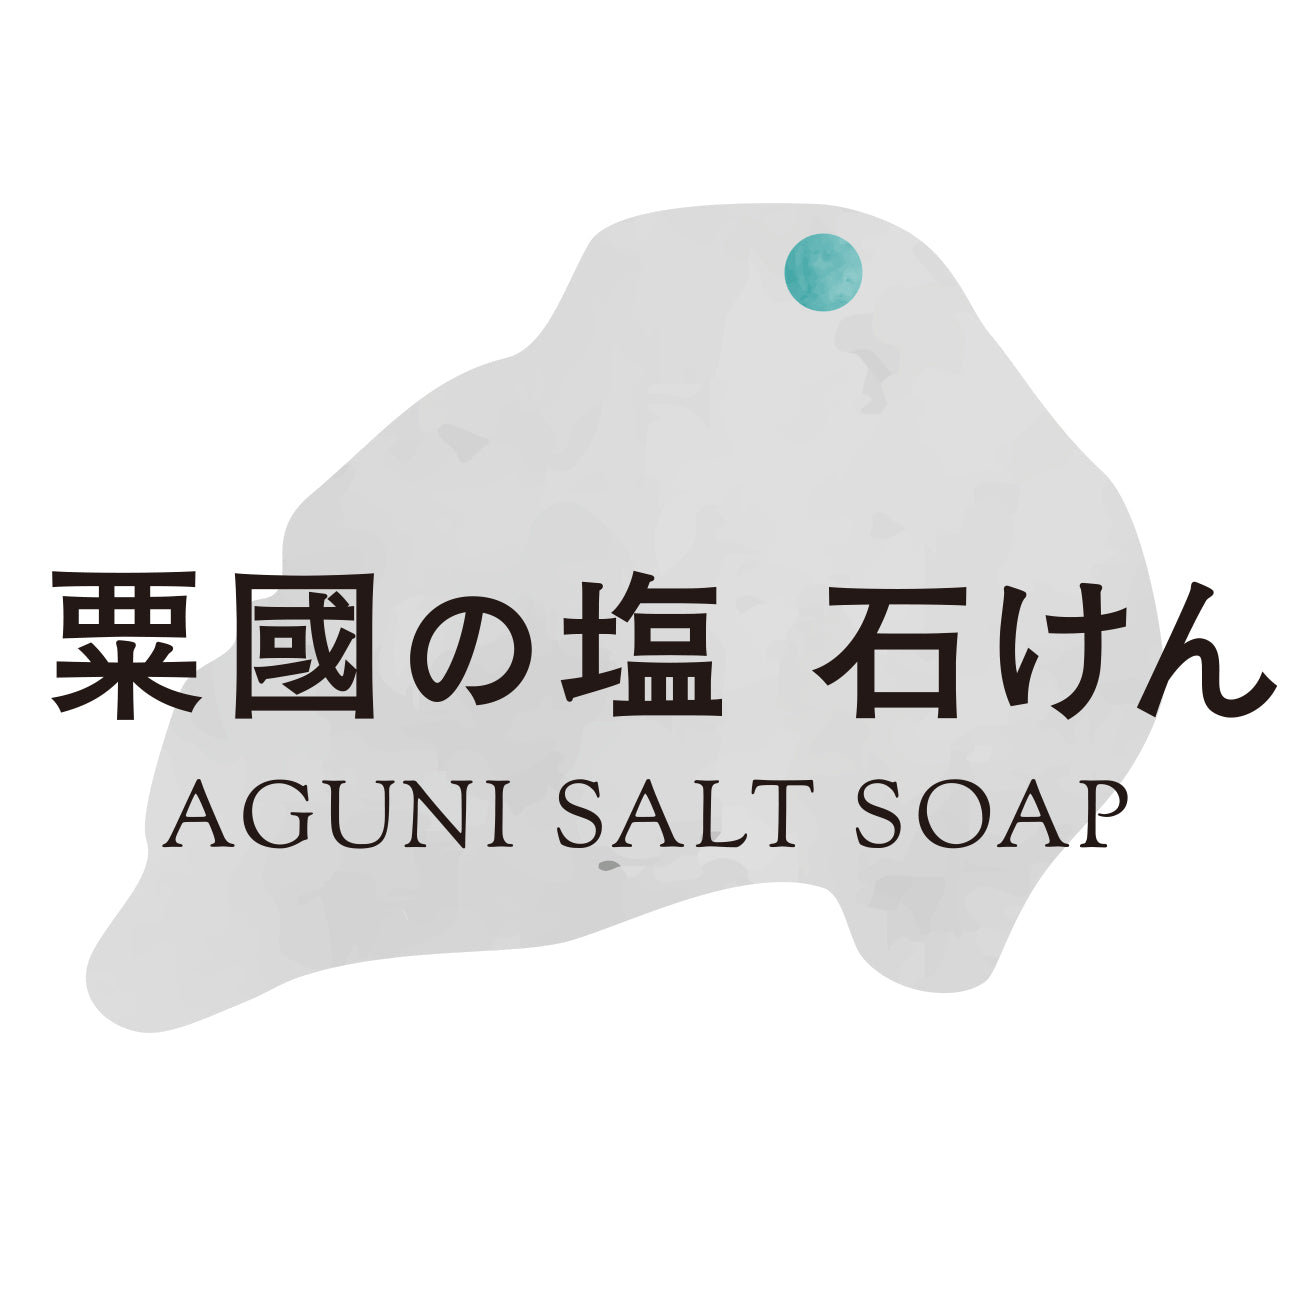 AGUNI SALT SOAP